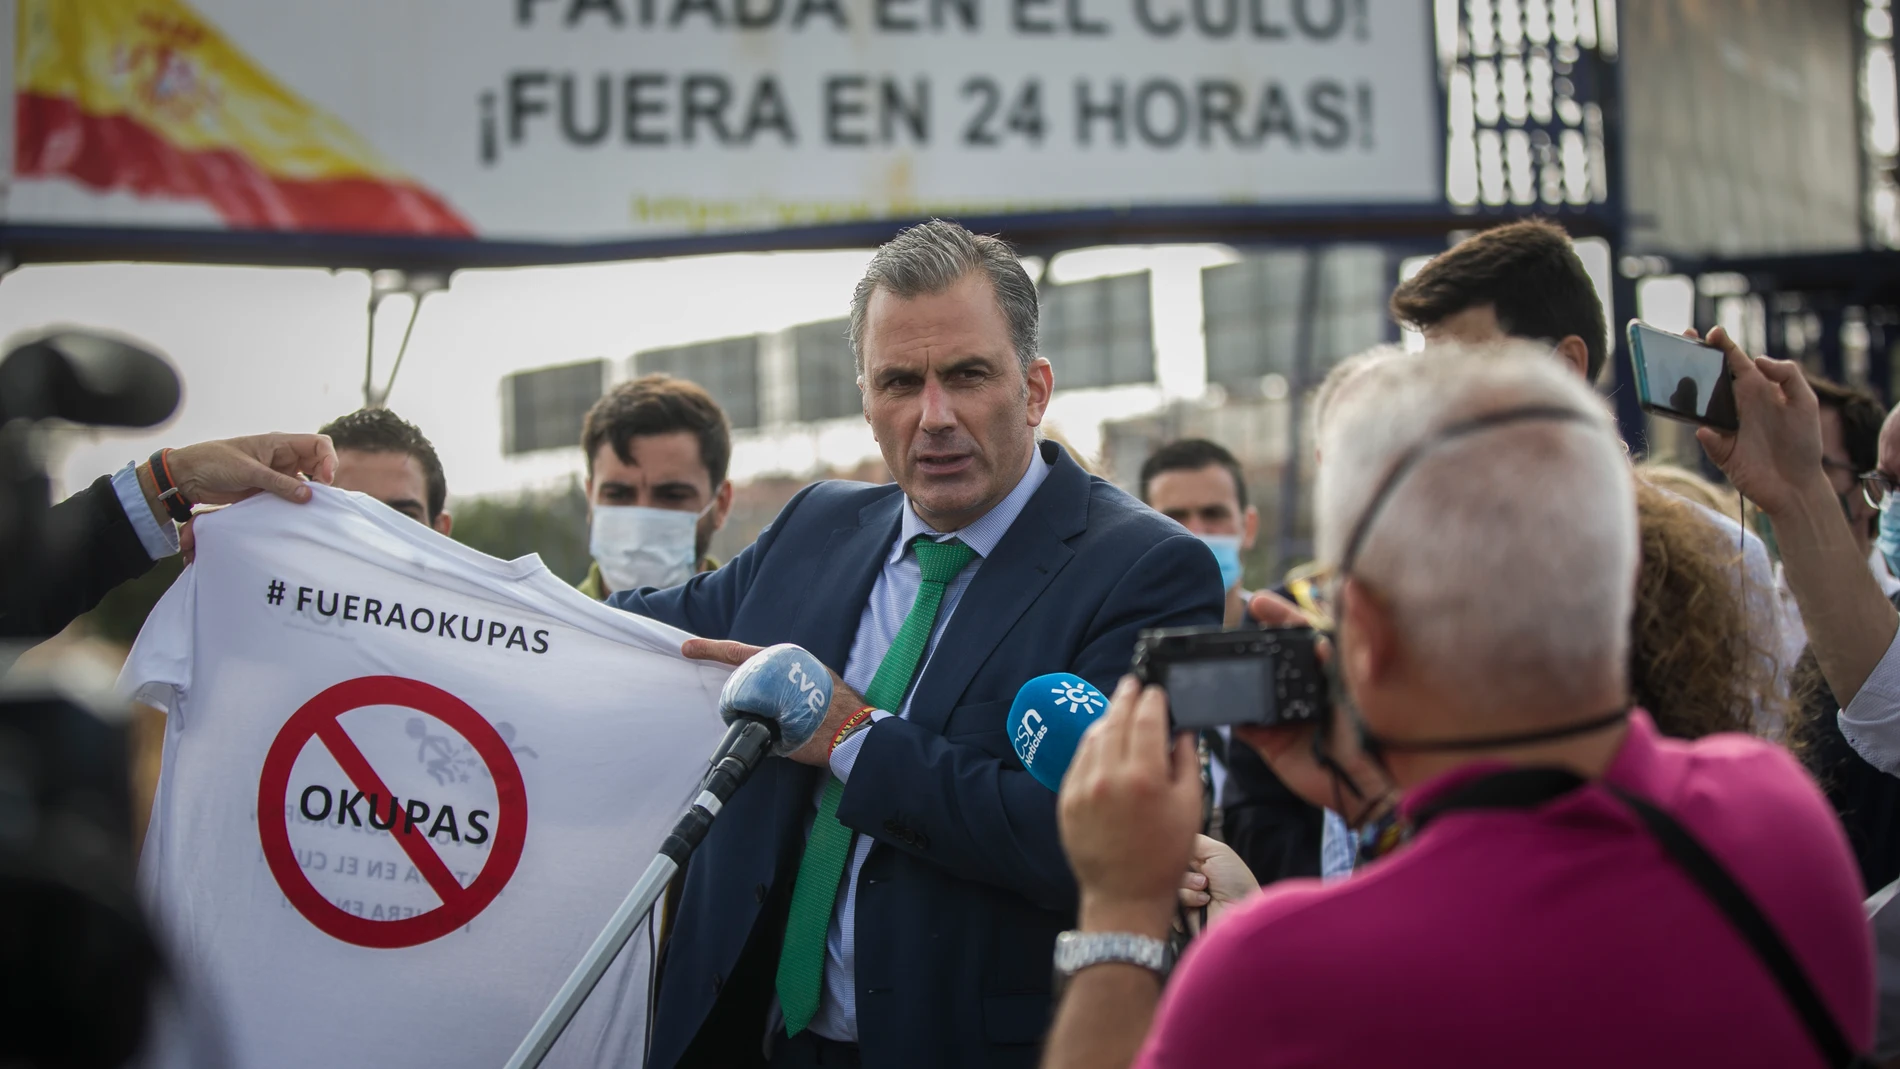 El secretario general de Vox, Javier Ortega Smith, atiende a los medios en un acto de la campaña "anti-okupa" en Sevilla